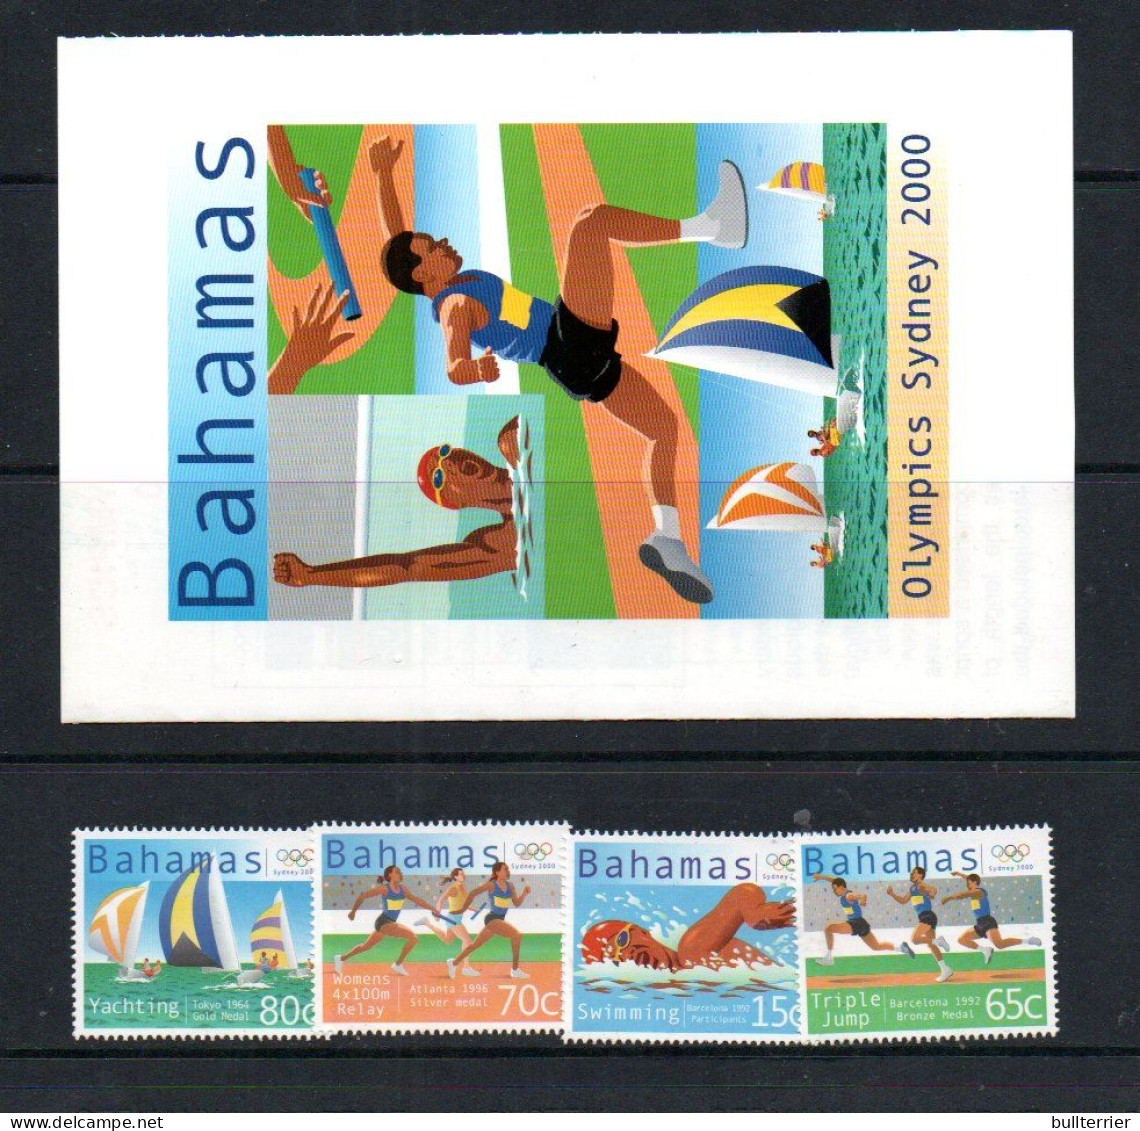 OLYMPICS -  BAHAMAS  - 2000-Sydney Olympics Set Of 4 + PUBLICITY Sheet  Mint Never Hinged - Zomer 2000: Sydney